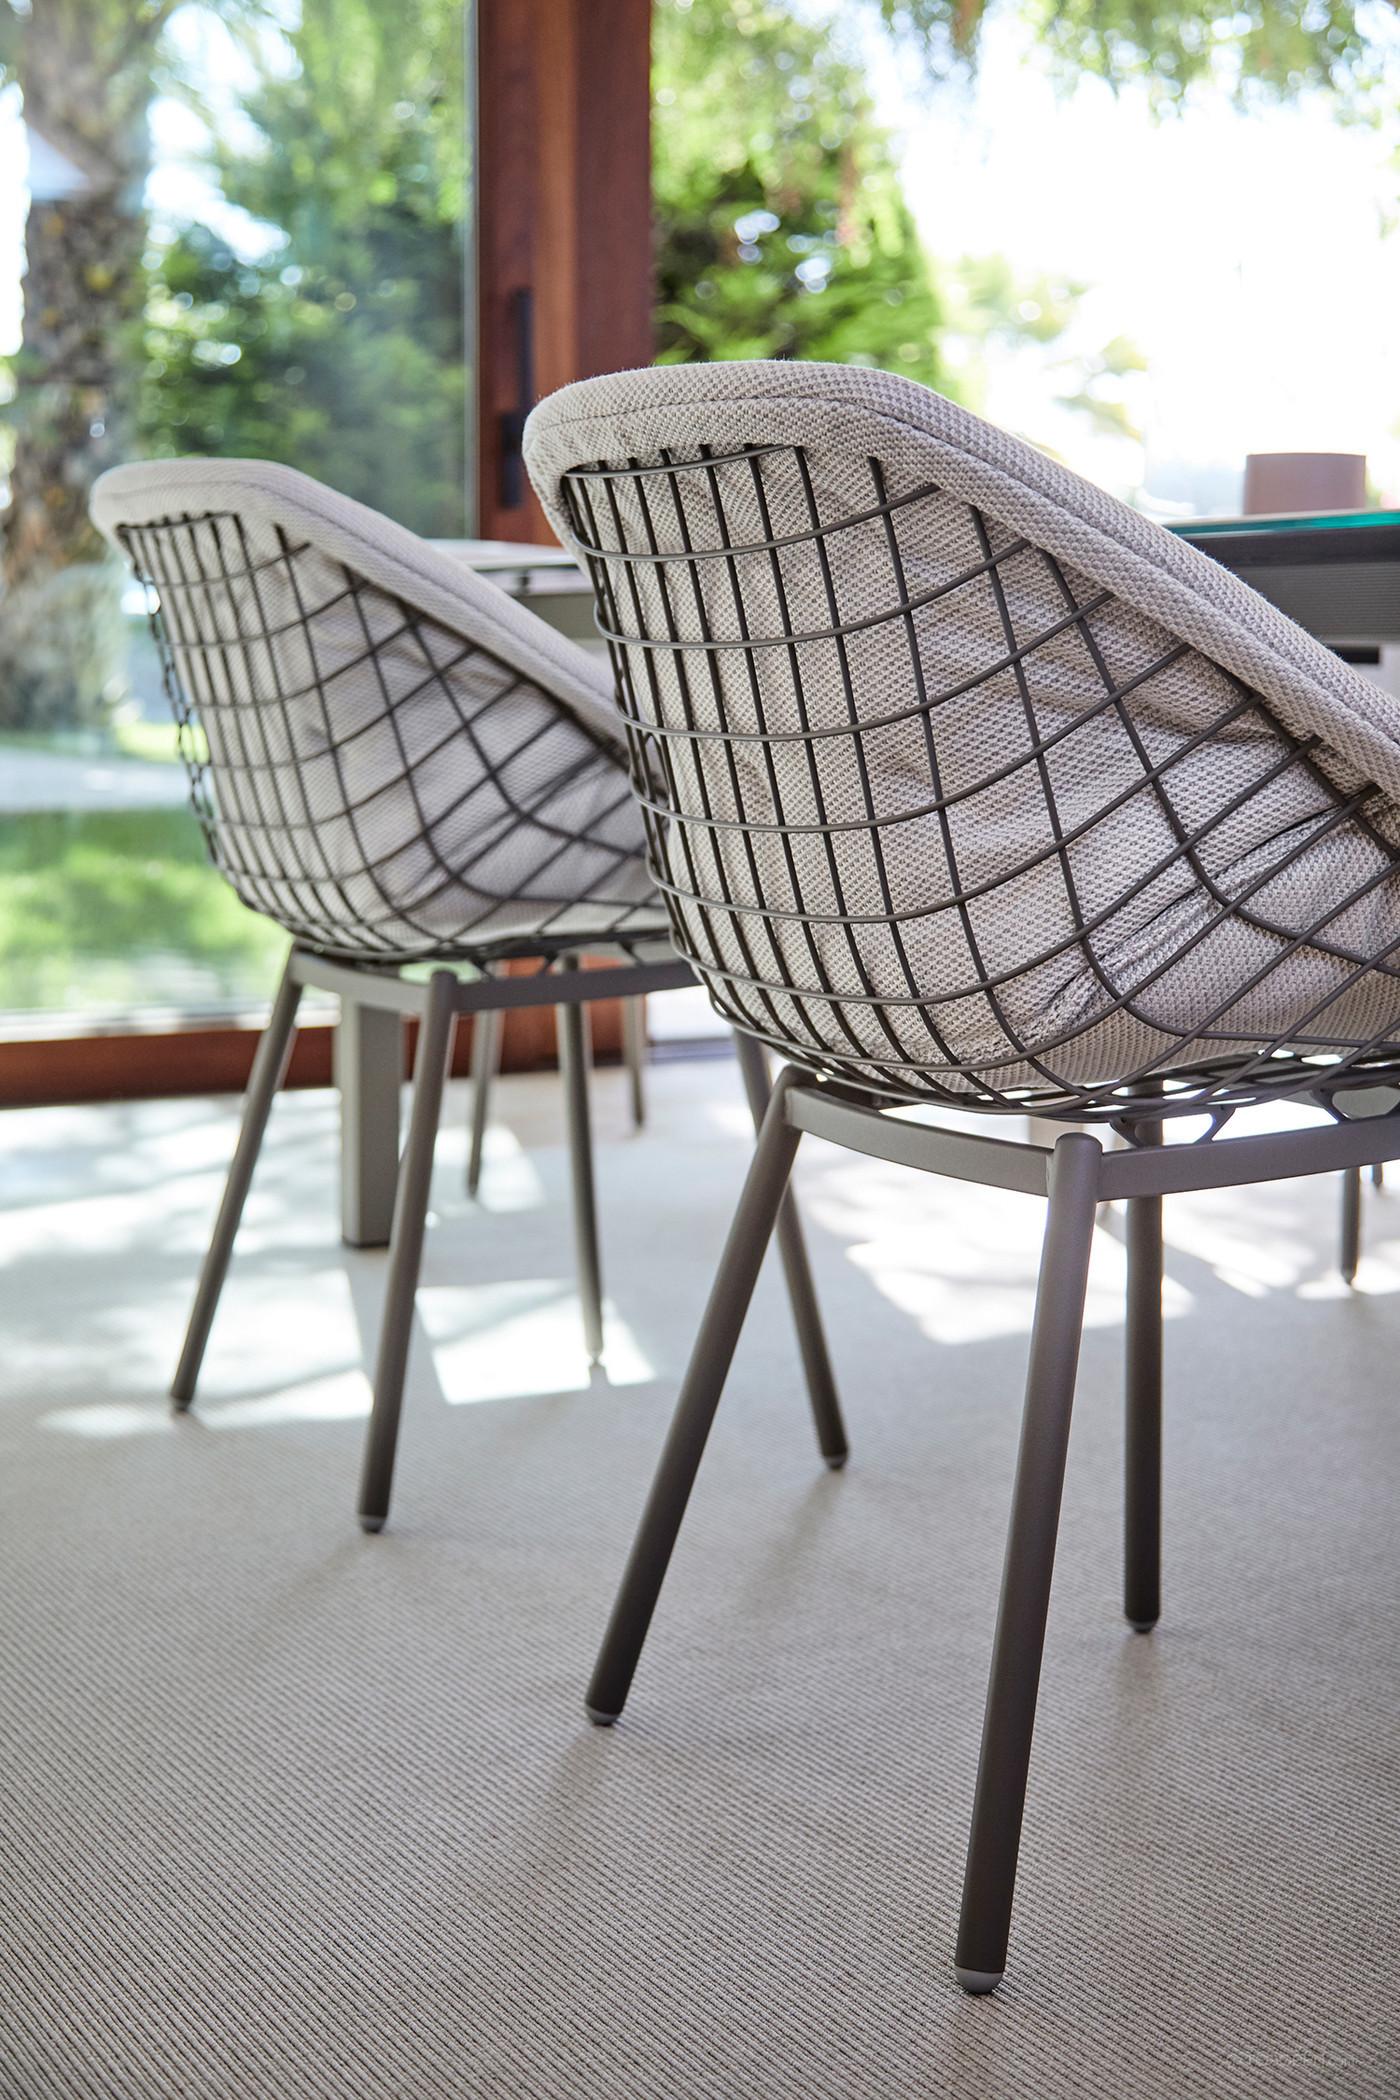 国外室内外两用铁质椅家具设计欣赏-06